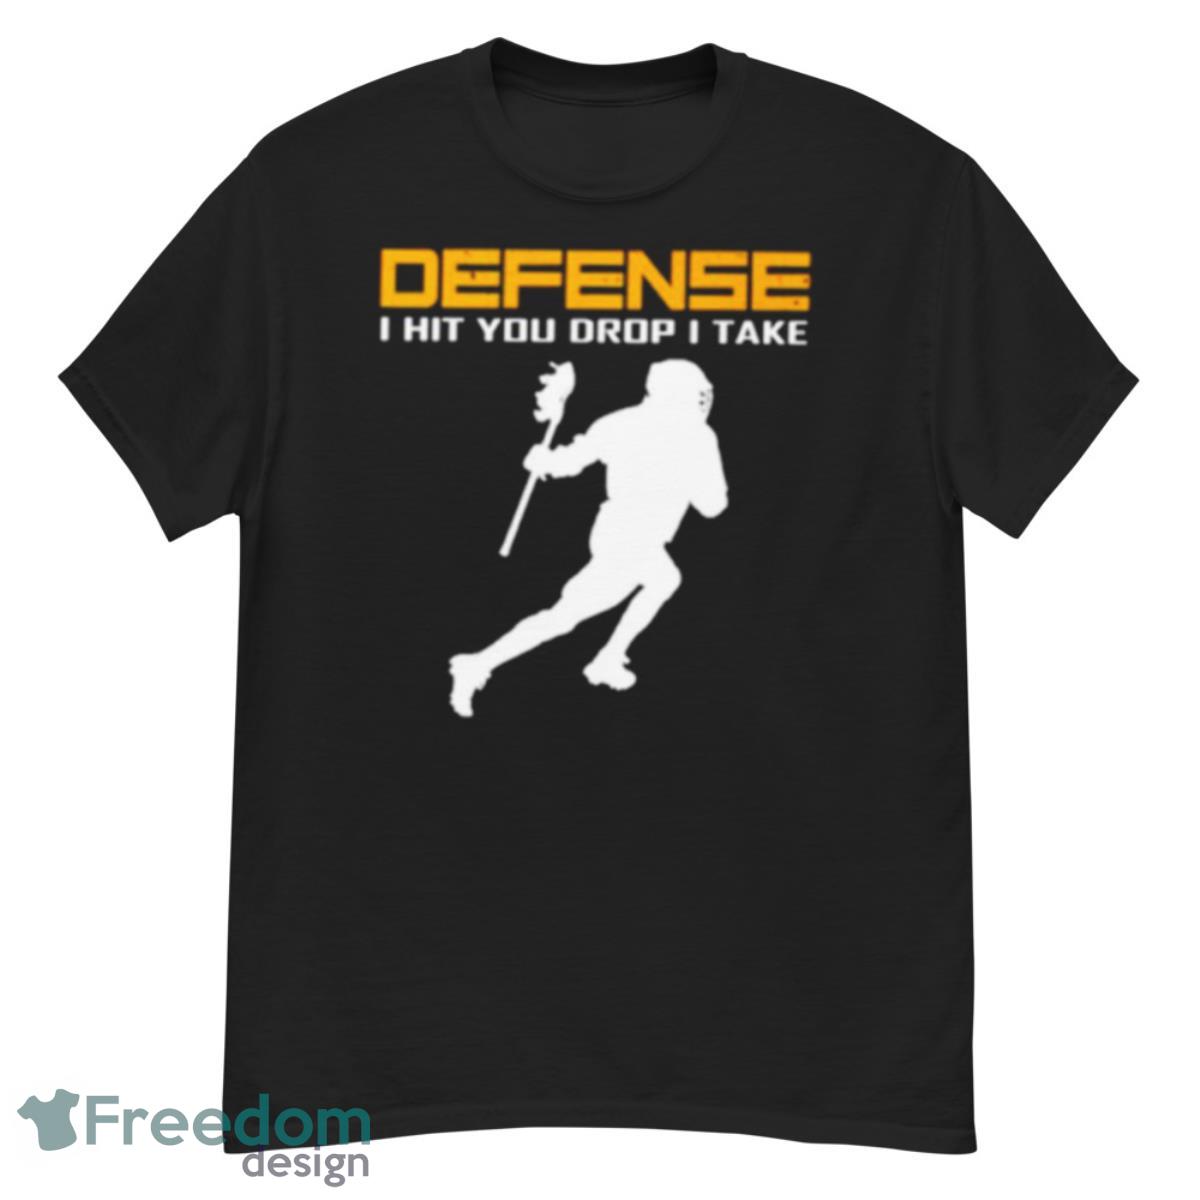 Defense I hit you drop I take lacrosse shirt - G500 Men’s Classic T-Shirt